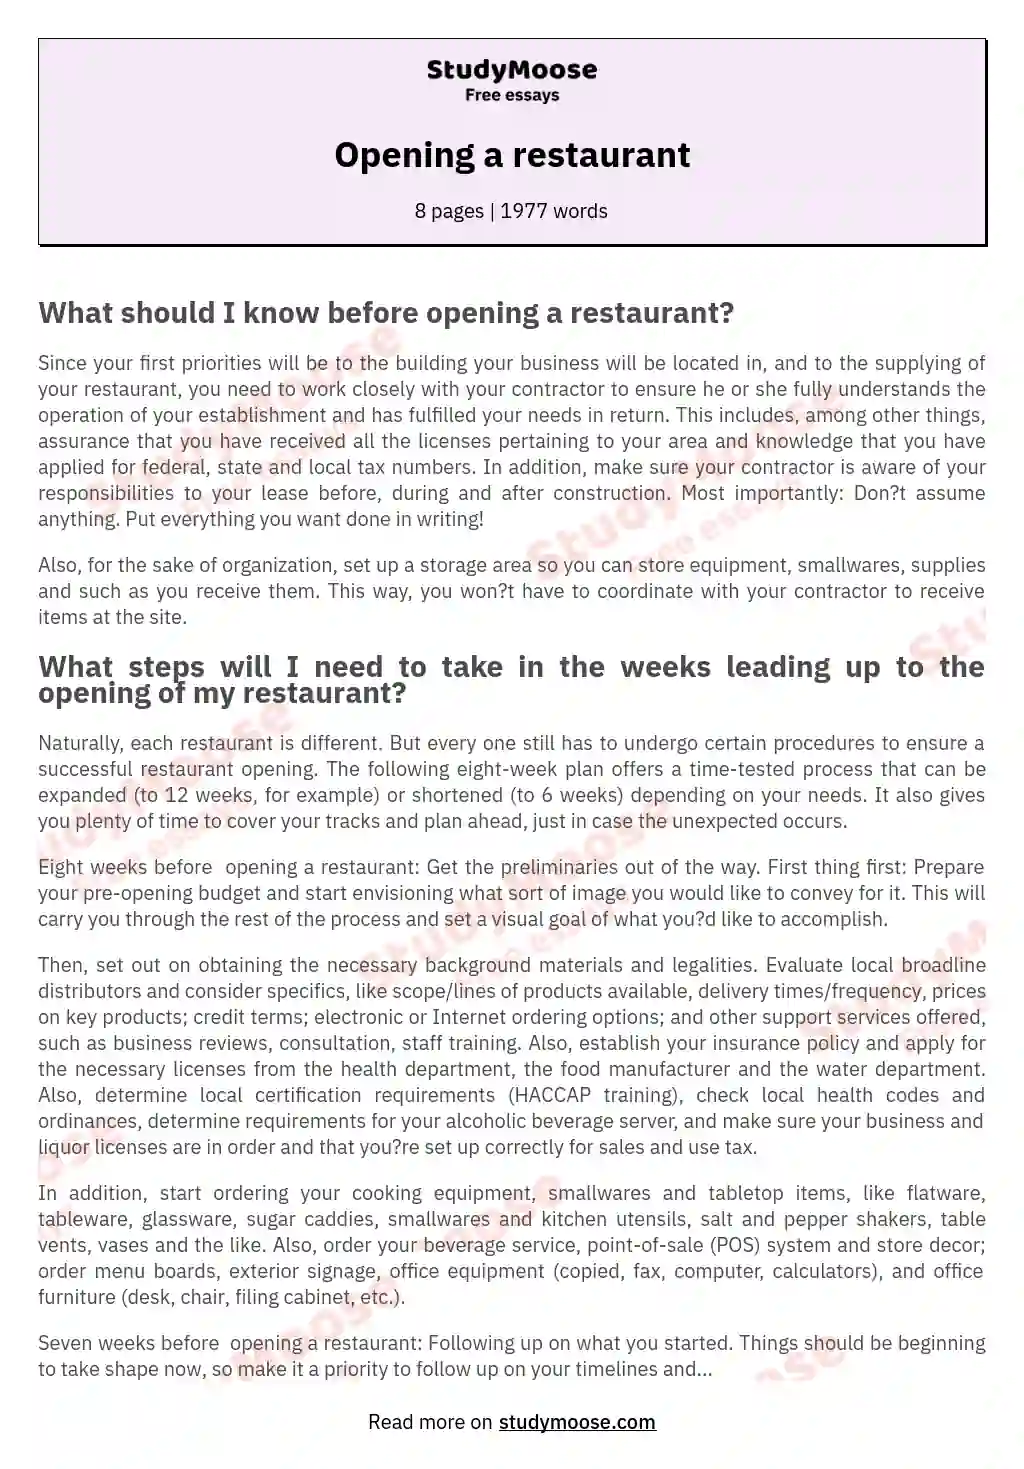 an essay about a restaurant